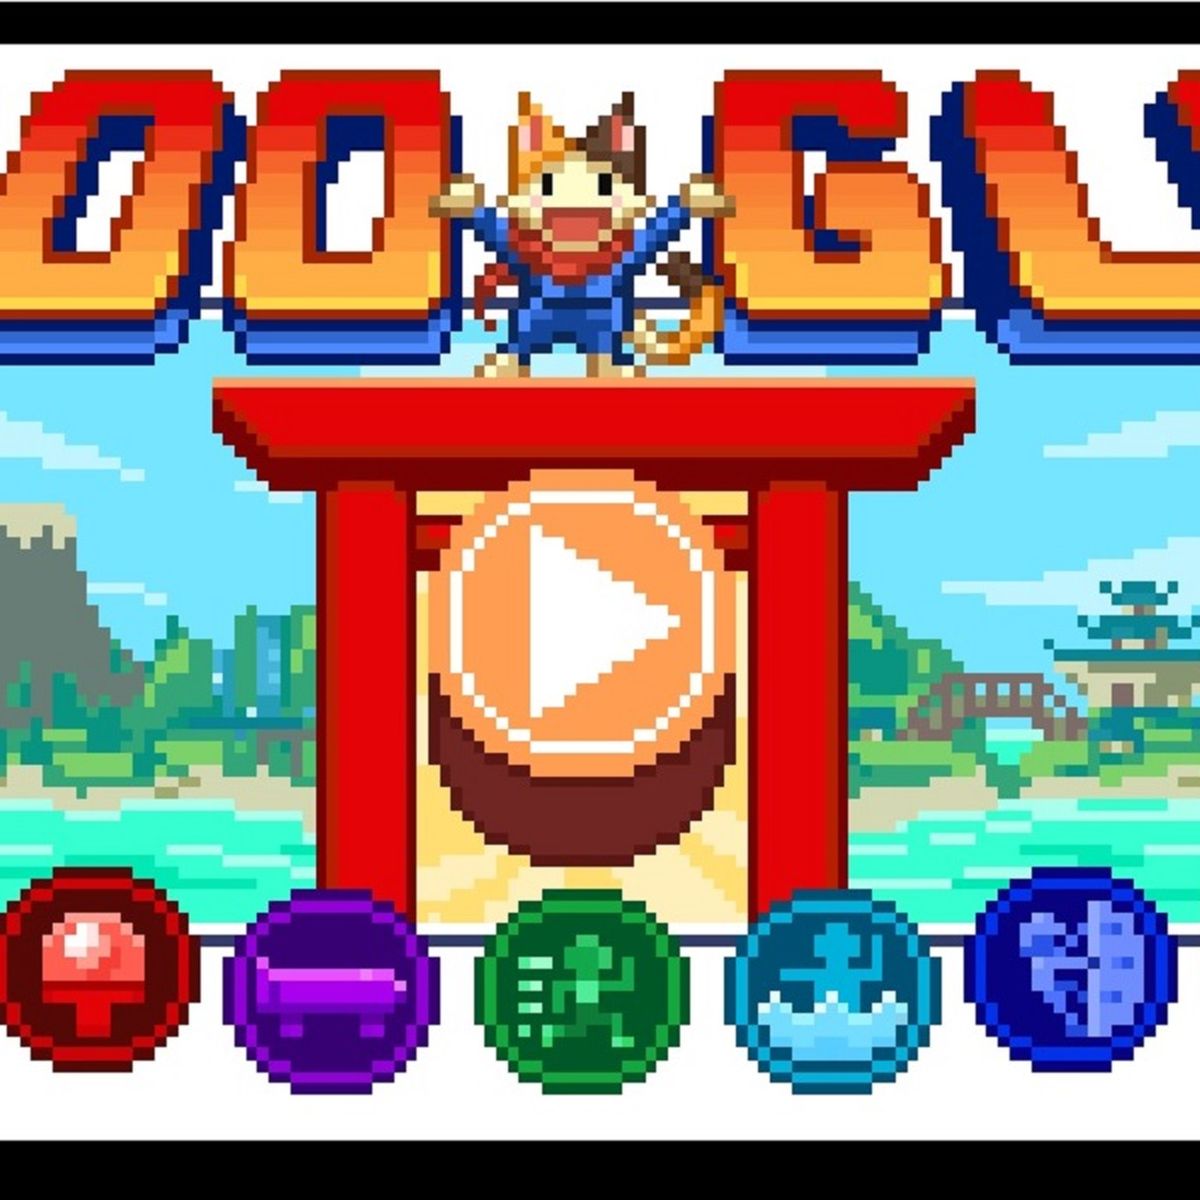 El nuevo Doodle de Google esconde un divertido videojuego de los JJ.OO.